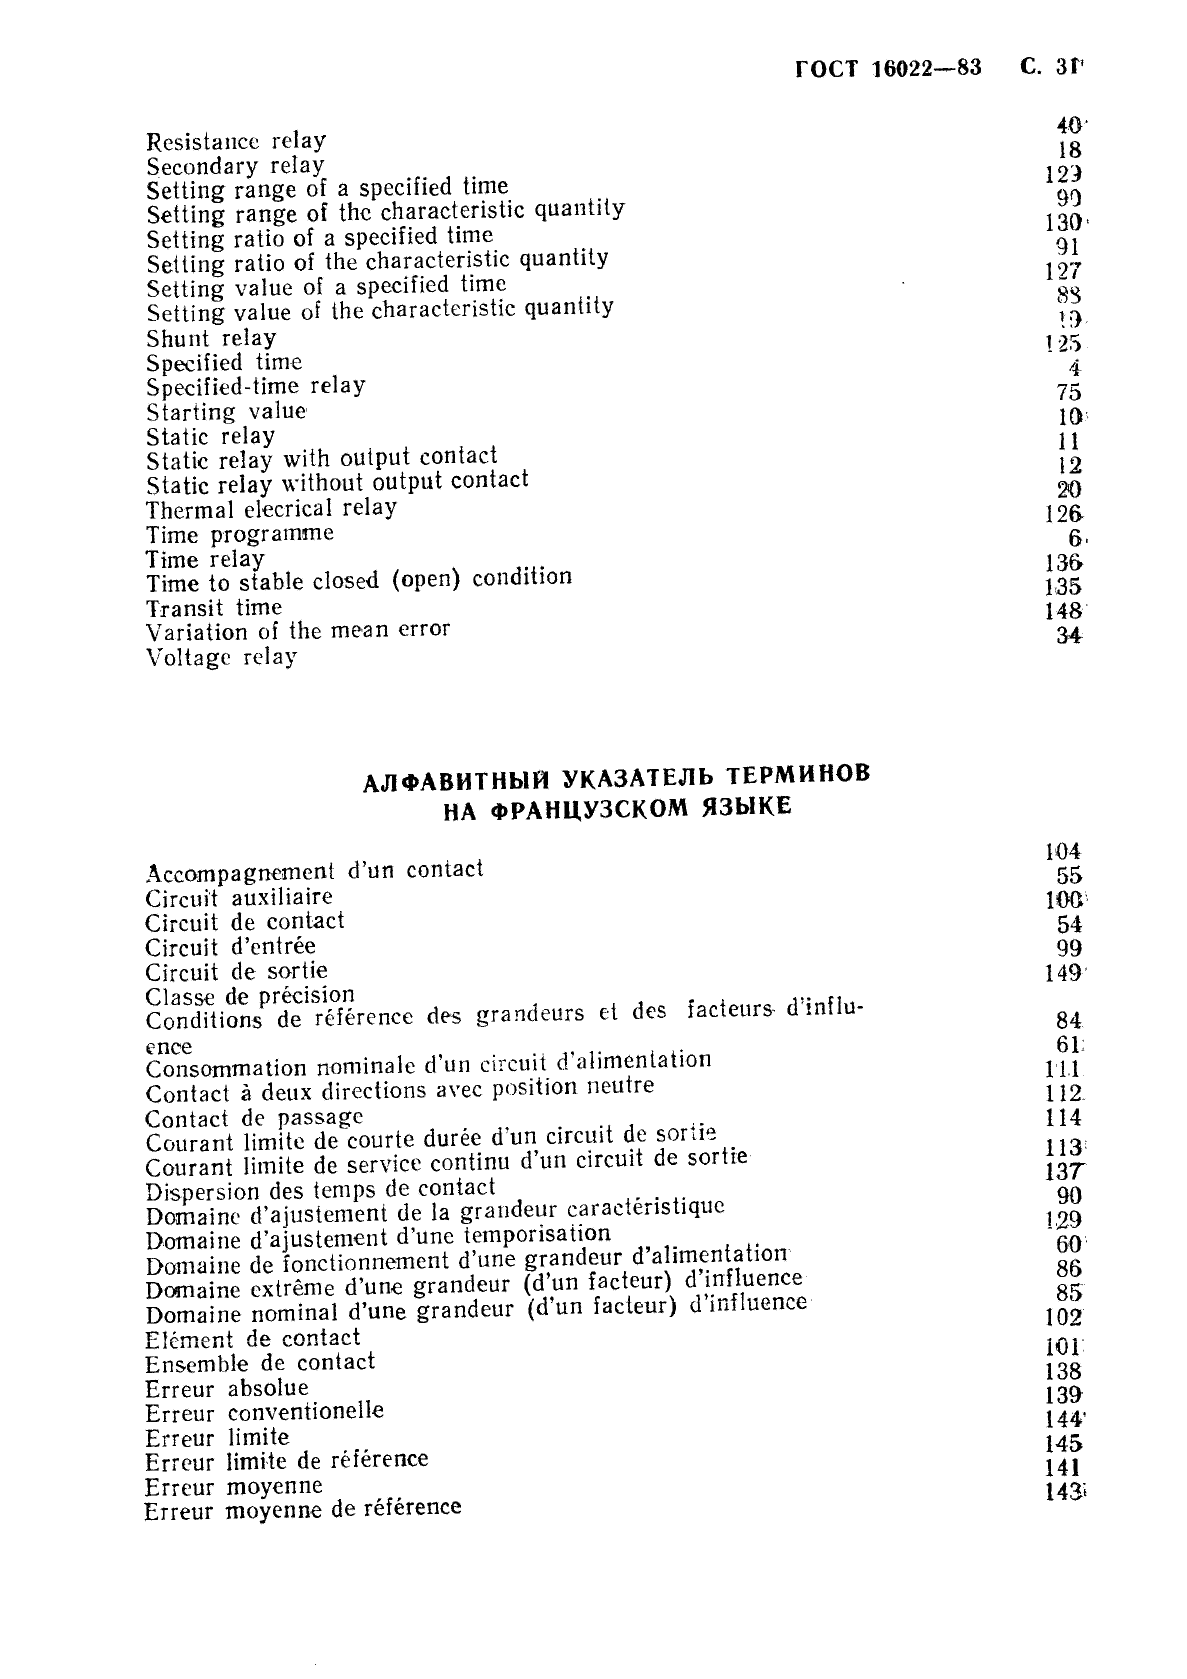 ГОСТ 16022-83 Реле электрические. Термины и определения (фото 32 из 37)